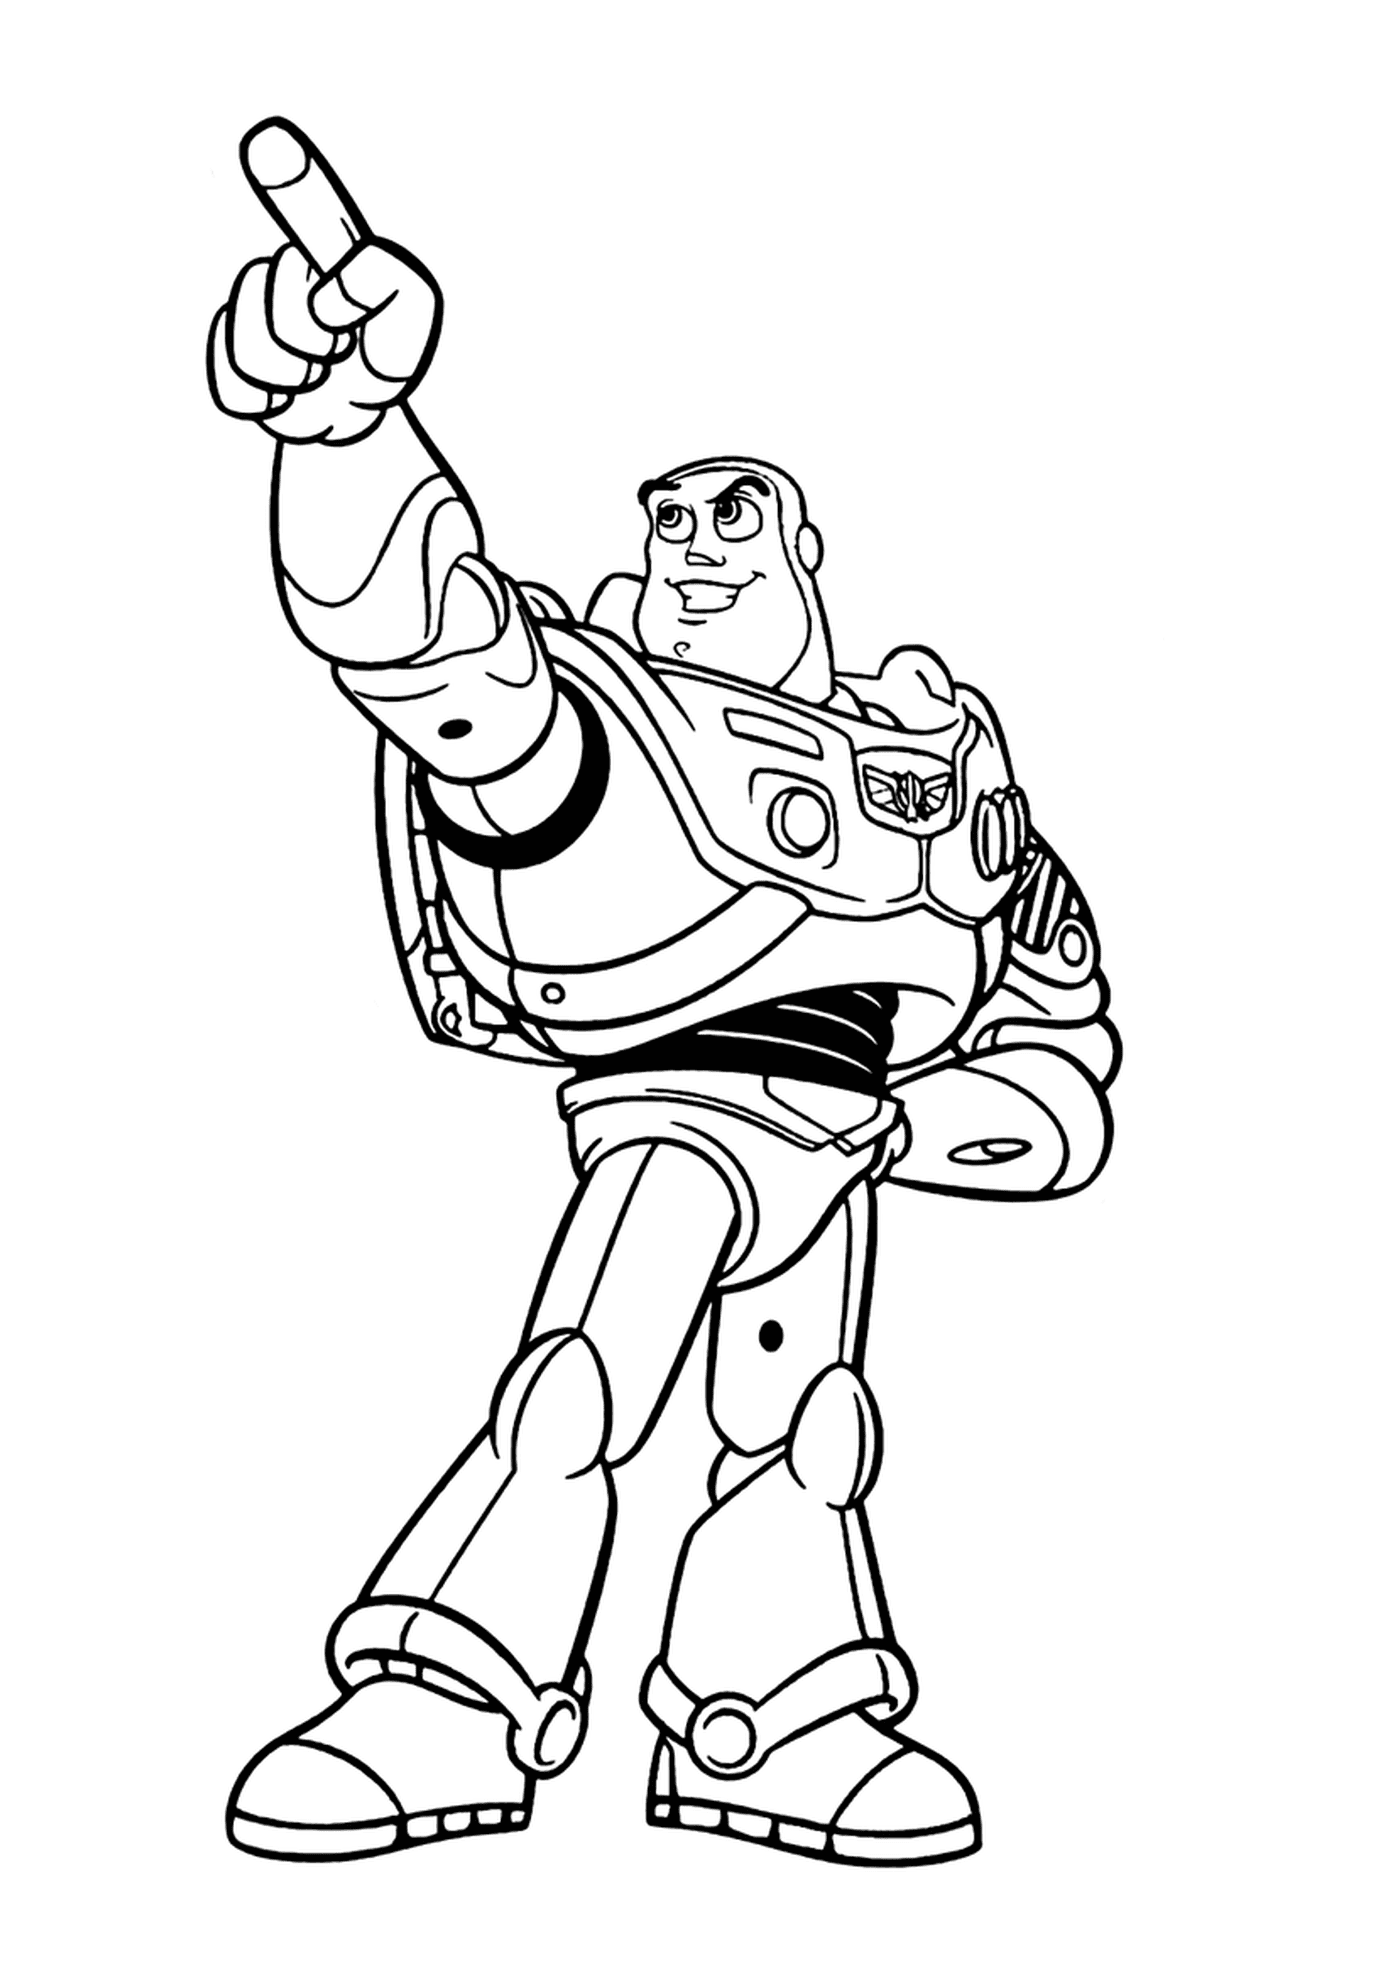  Buzz Lightyear, valiente campeón estrella 